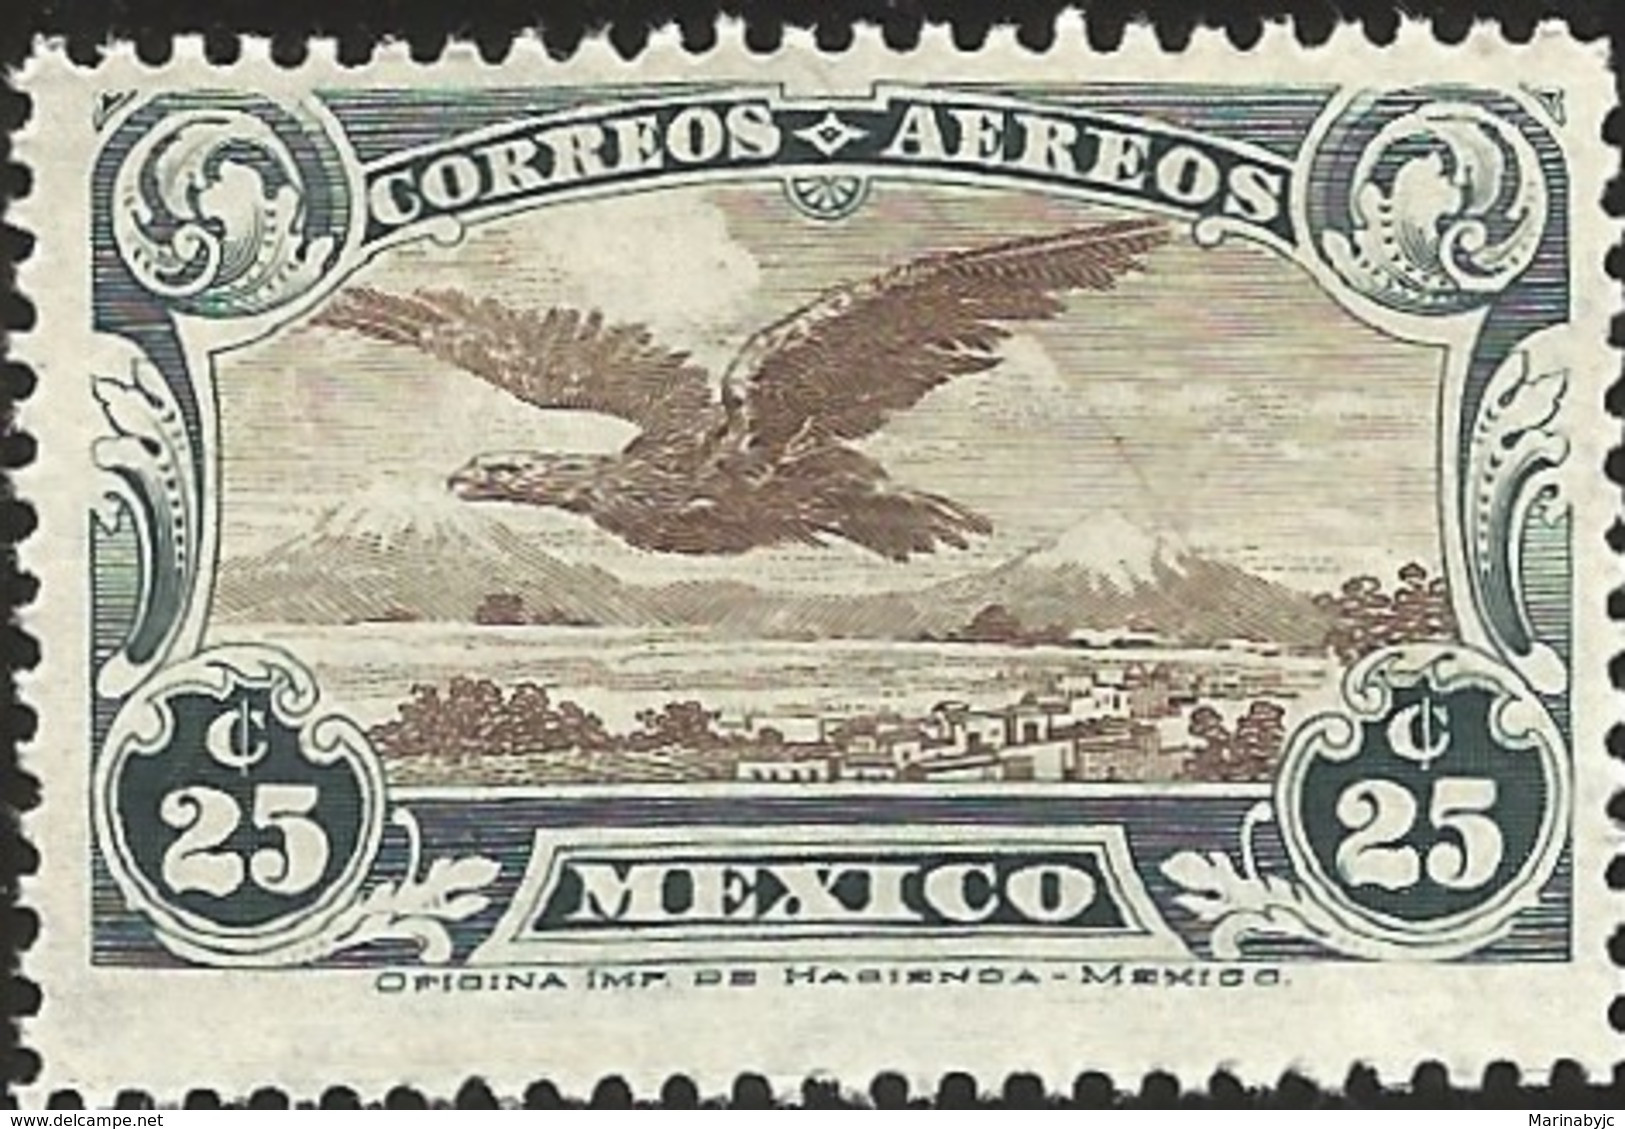 RJ) 1928 MEXICO, EAGLE FLYING OVER MOUNTAINS, SCOTT C4, MNH - Mexiko